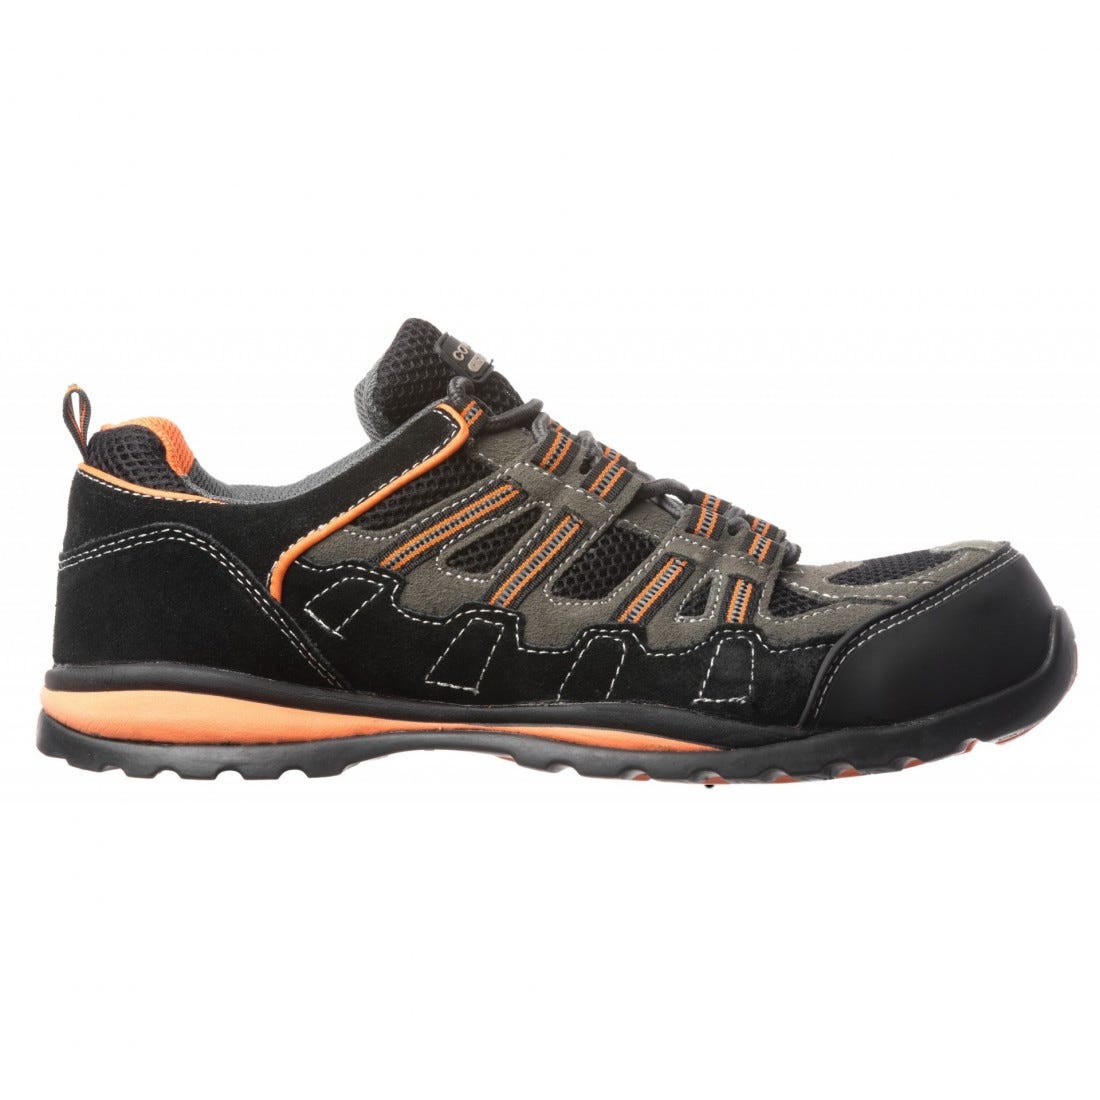 Chaussures de sécurité HELVITE S1P composite noir/orange - COVERGUARD - Taille 42 1